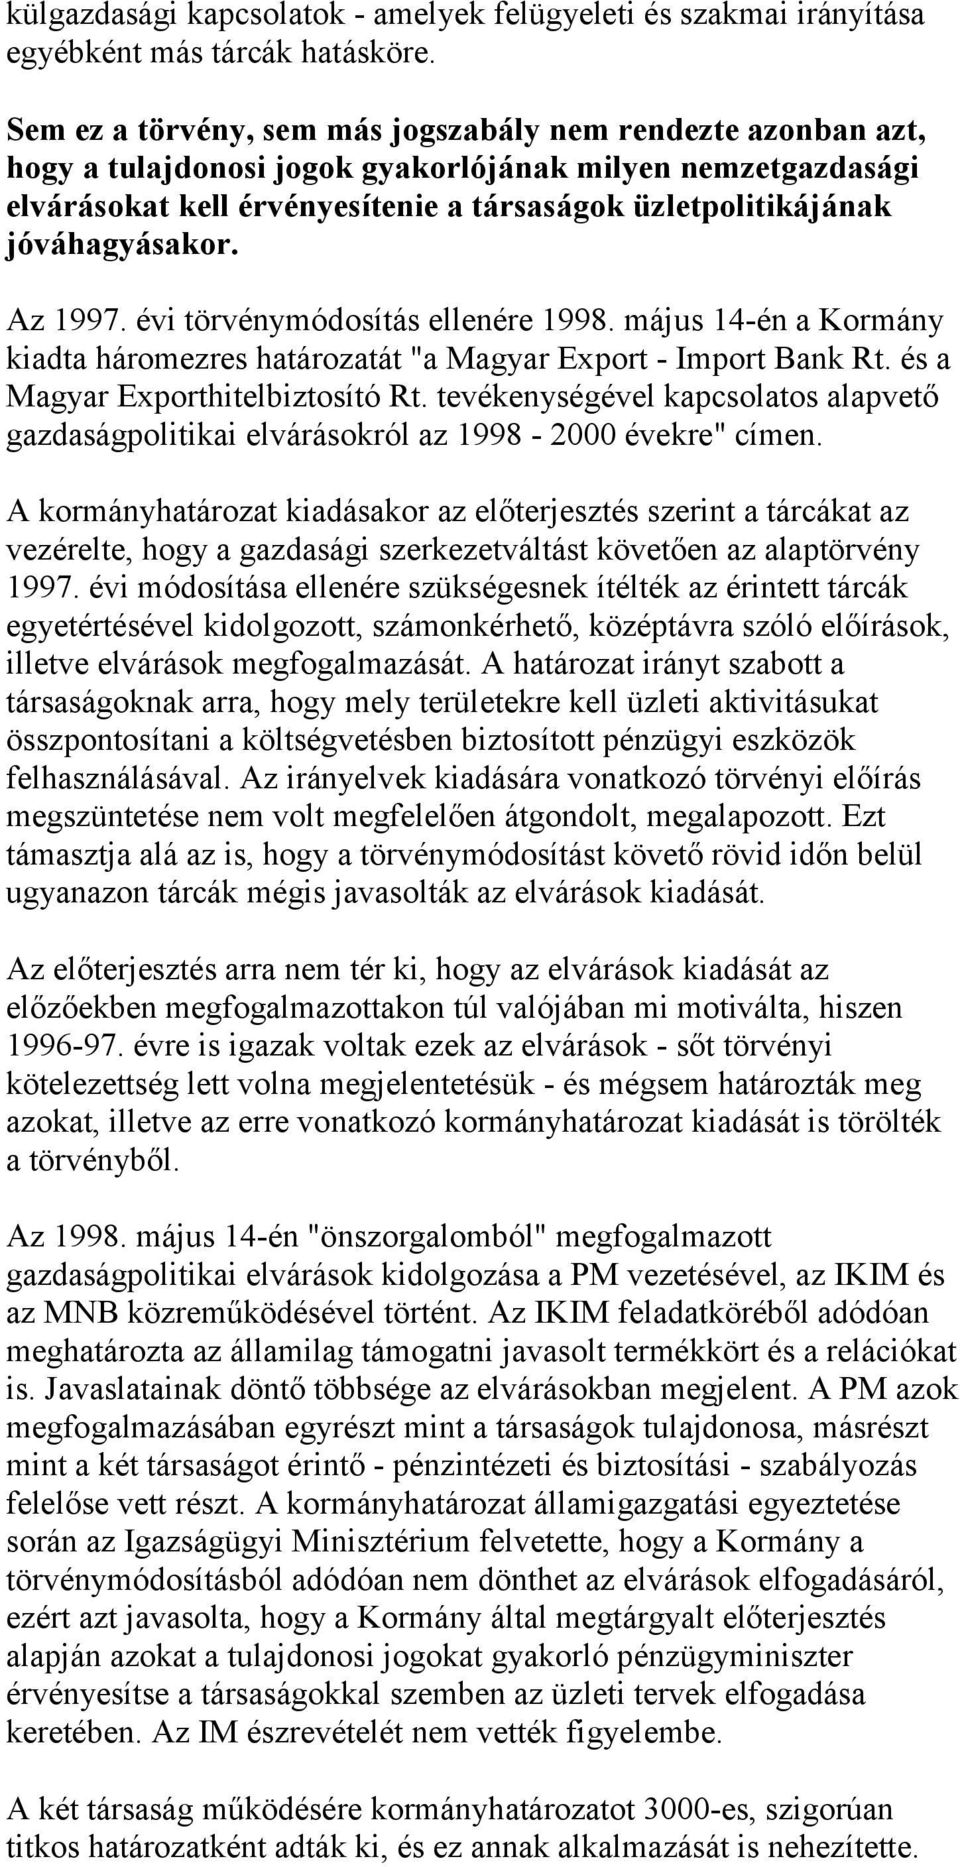 jóváhagyásakor. Az 1997. évi törvénymódosítás ellenére 1998. május 14-én a Kormány kiadta háromezres határozatát "a Magyar Export - Import Bank Rt. és a Magyar Exporthitelbiztosító Rt.